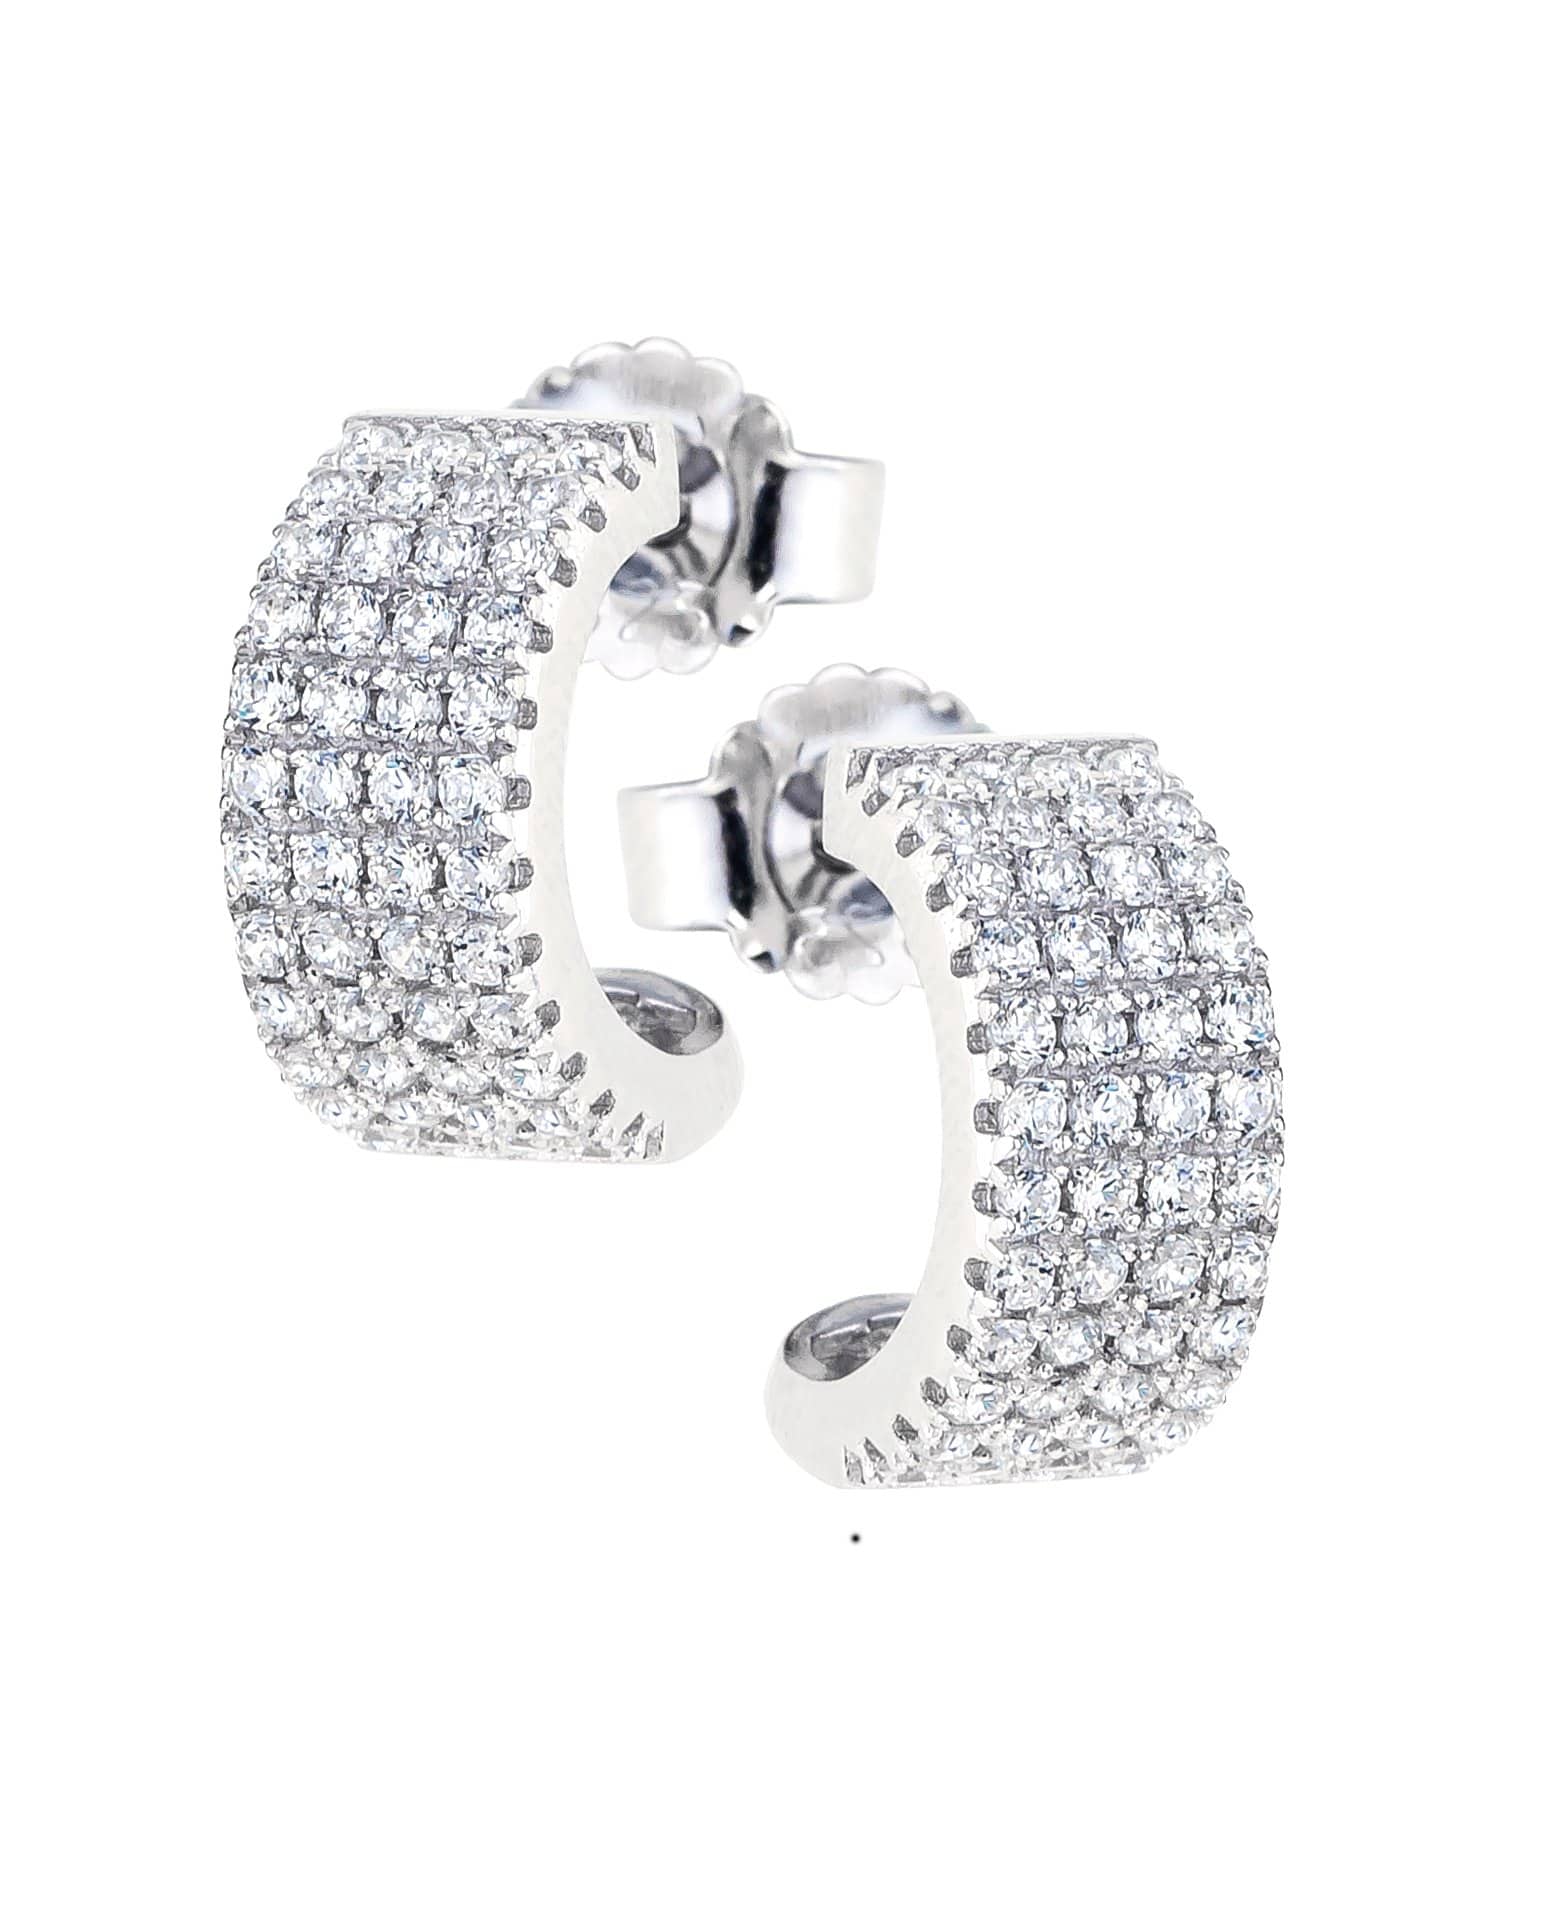 Lynora Jewellery Earring Sterling Silver Quatro Earrings Sterling Silver